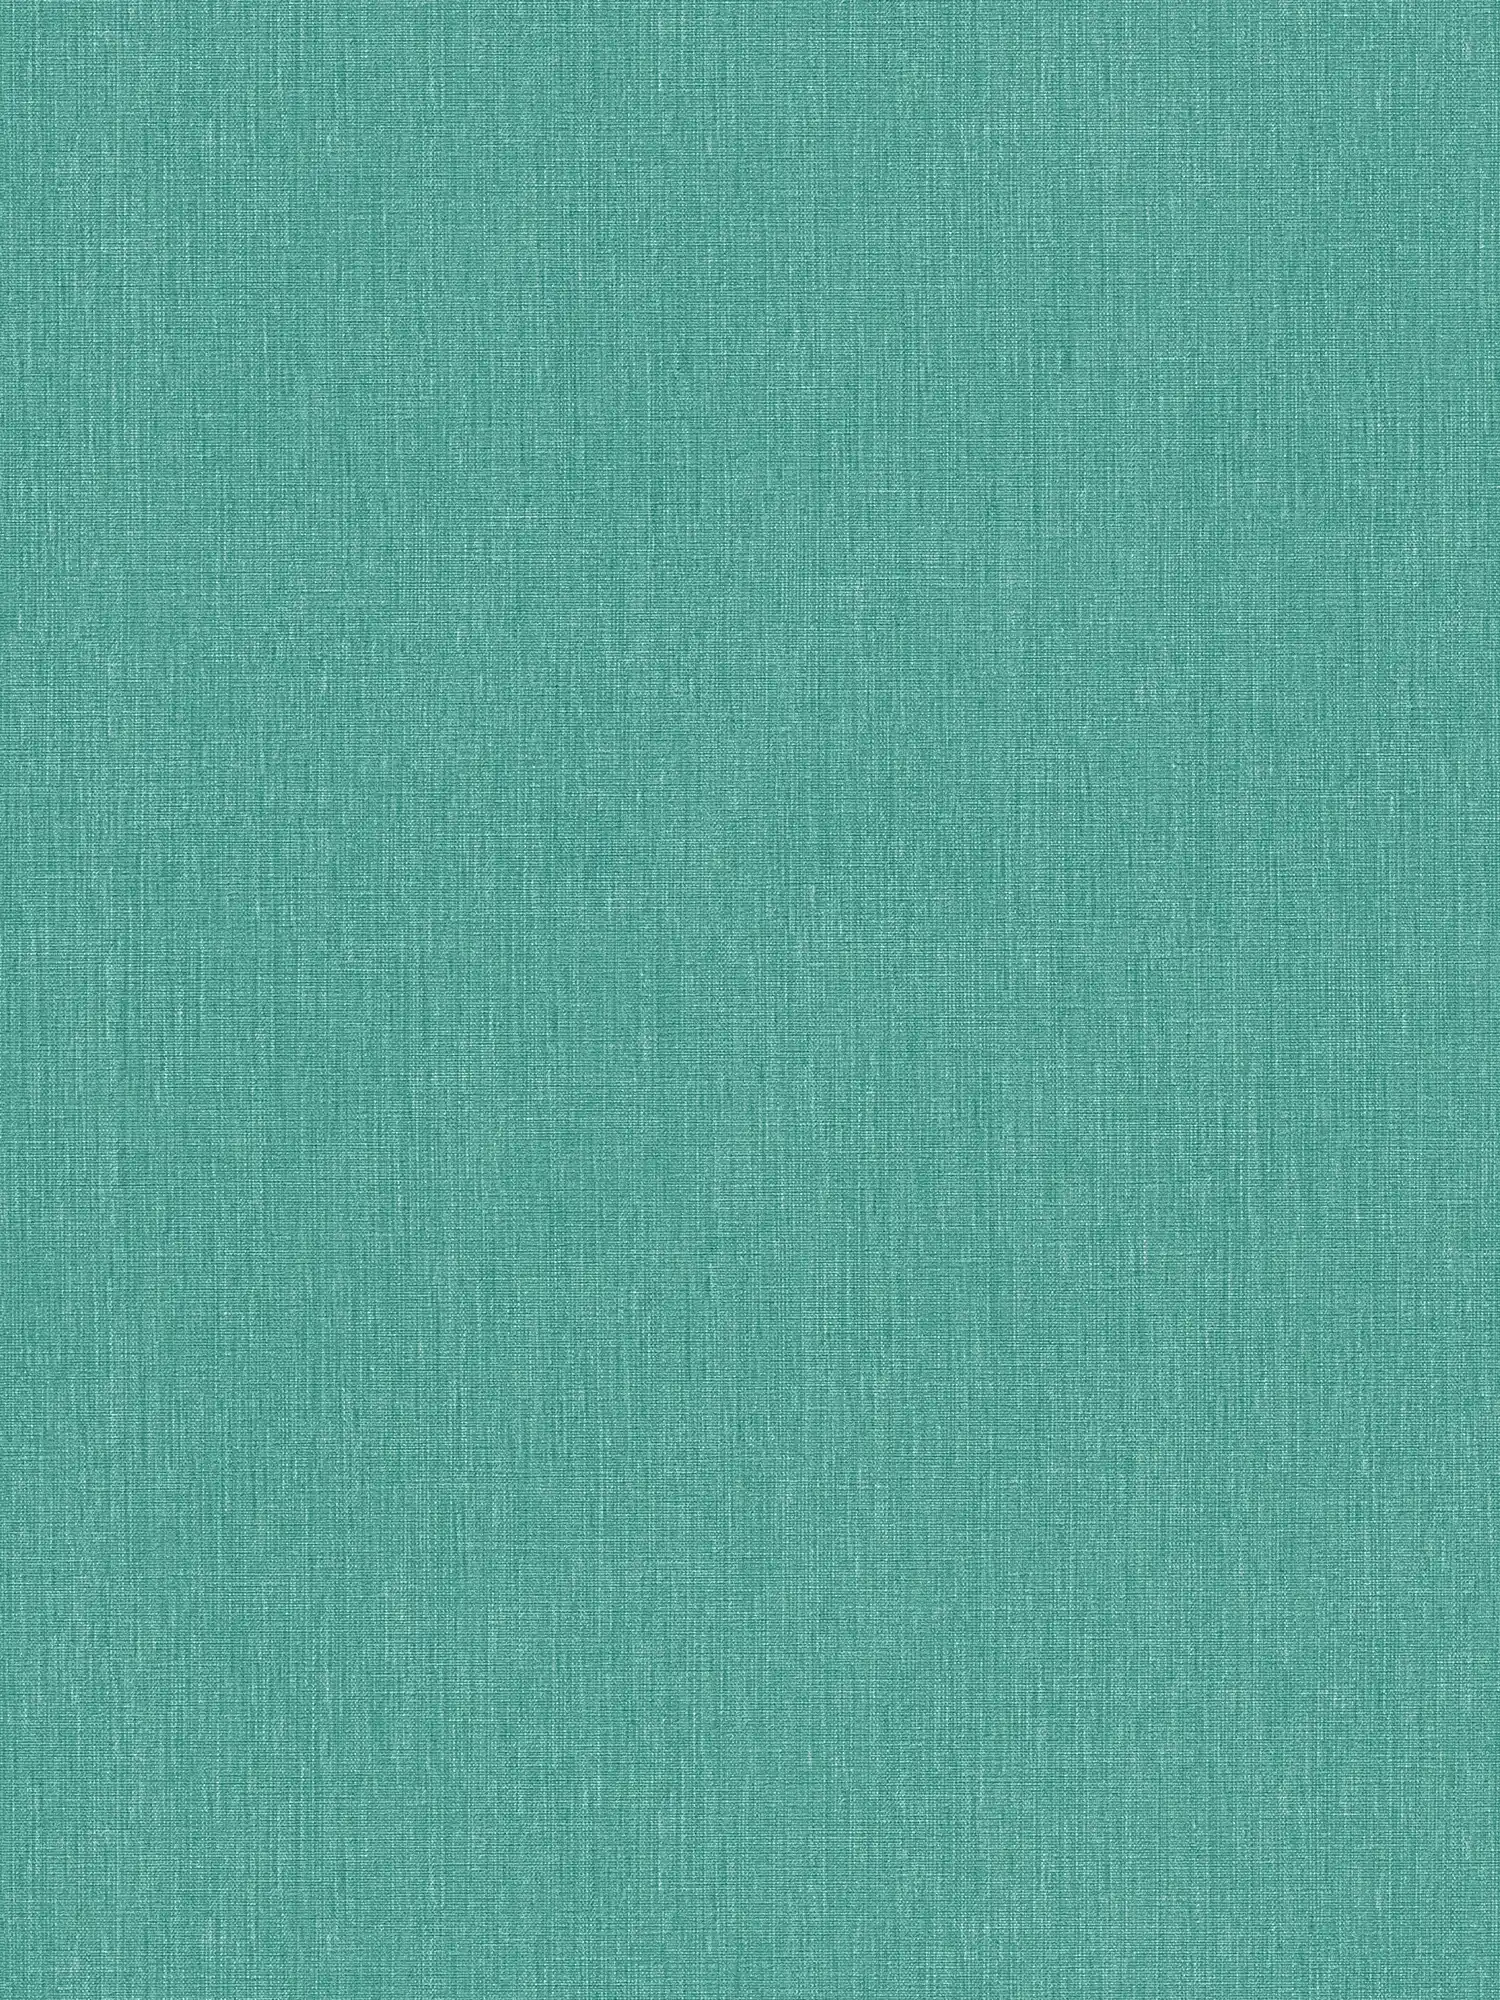 Eenheidsbehang met textuur op vlies in matte look - groen, blauw
